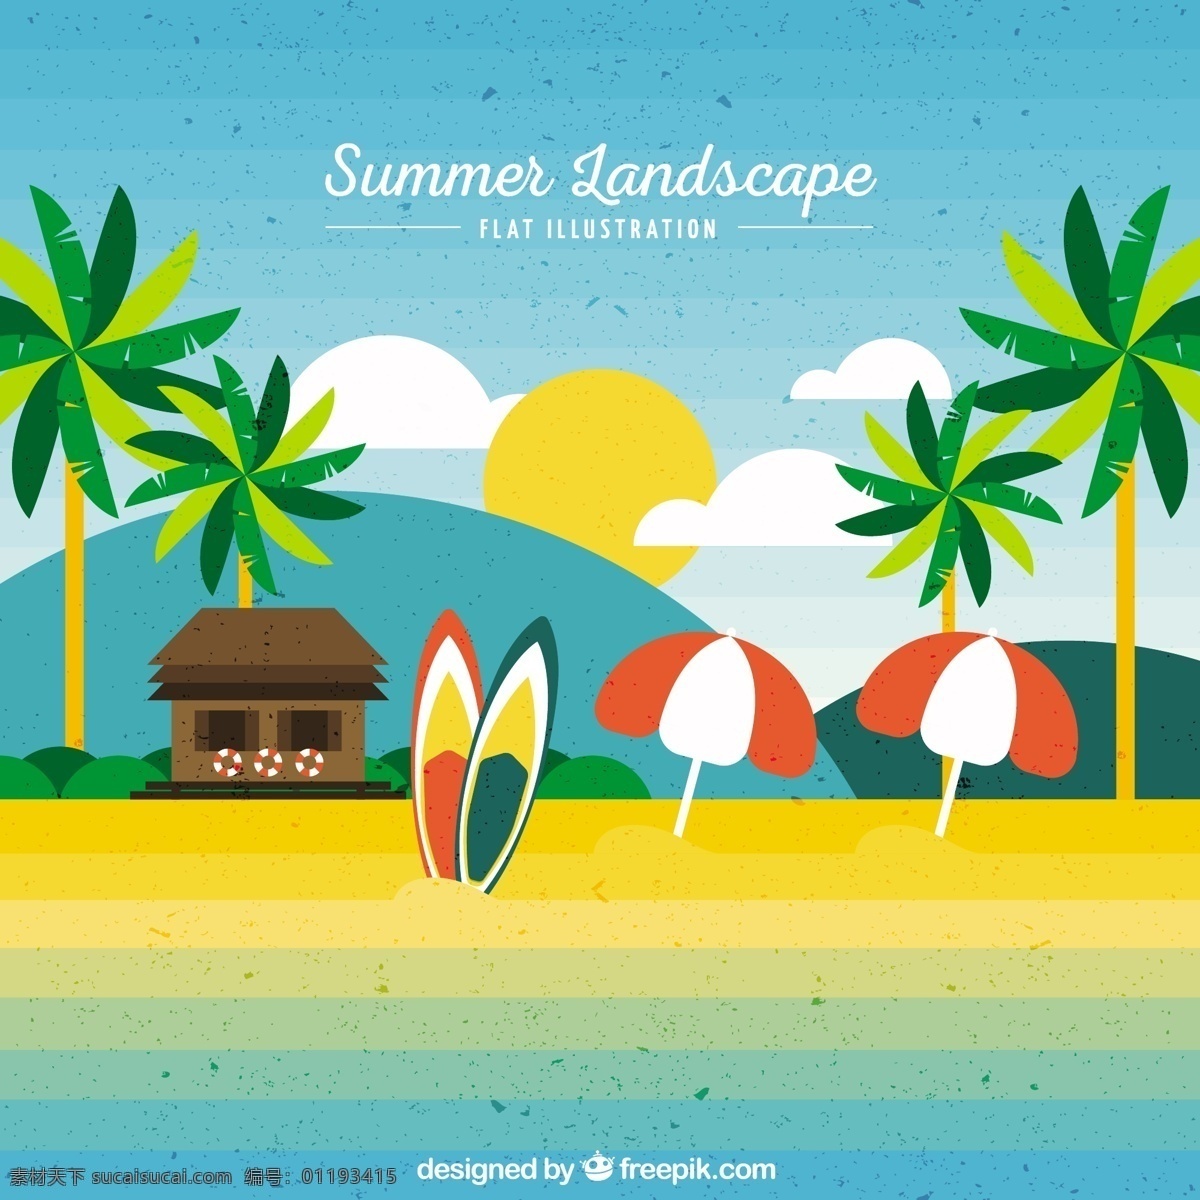 可爱 海滩 景观 背景 复古 夏季 阳光 沙滩 地势平坦 假日 伞 树木 平整 棕榈 度假 山 沙 夏天